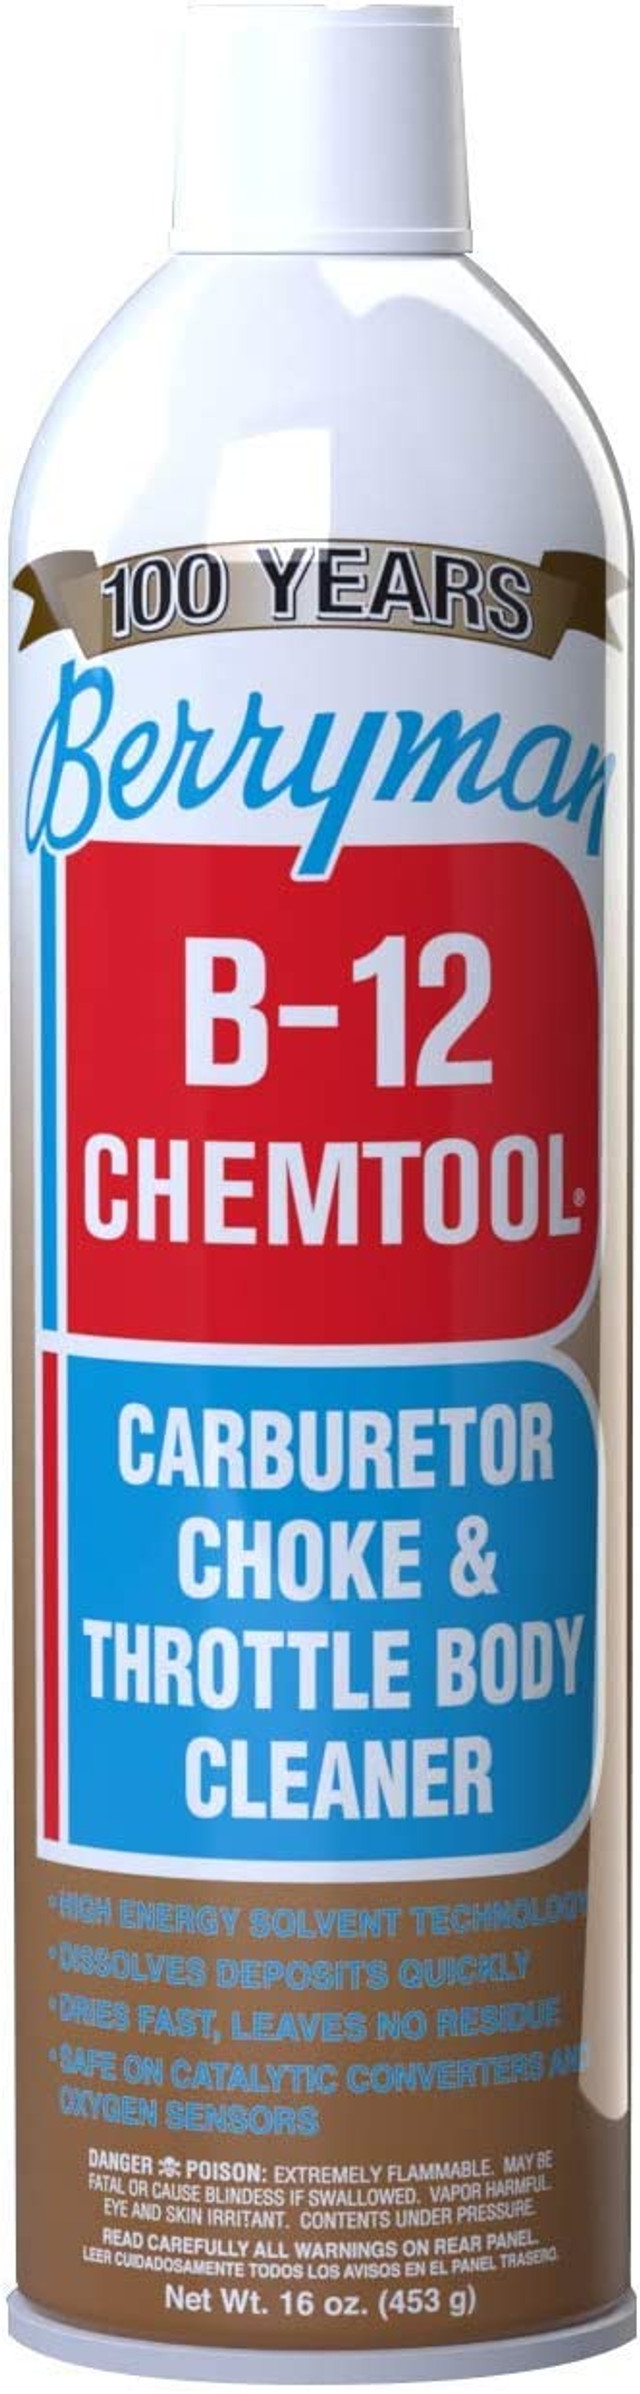 Limpador de carburador BERRYMAN b-12 chemtool (0117)